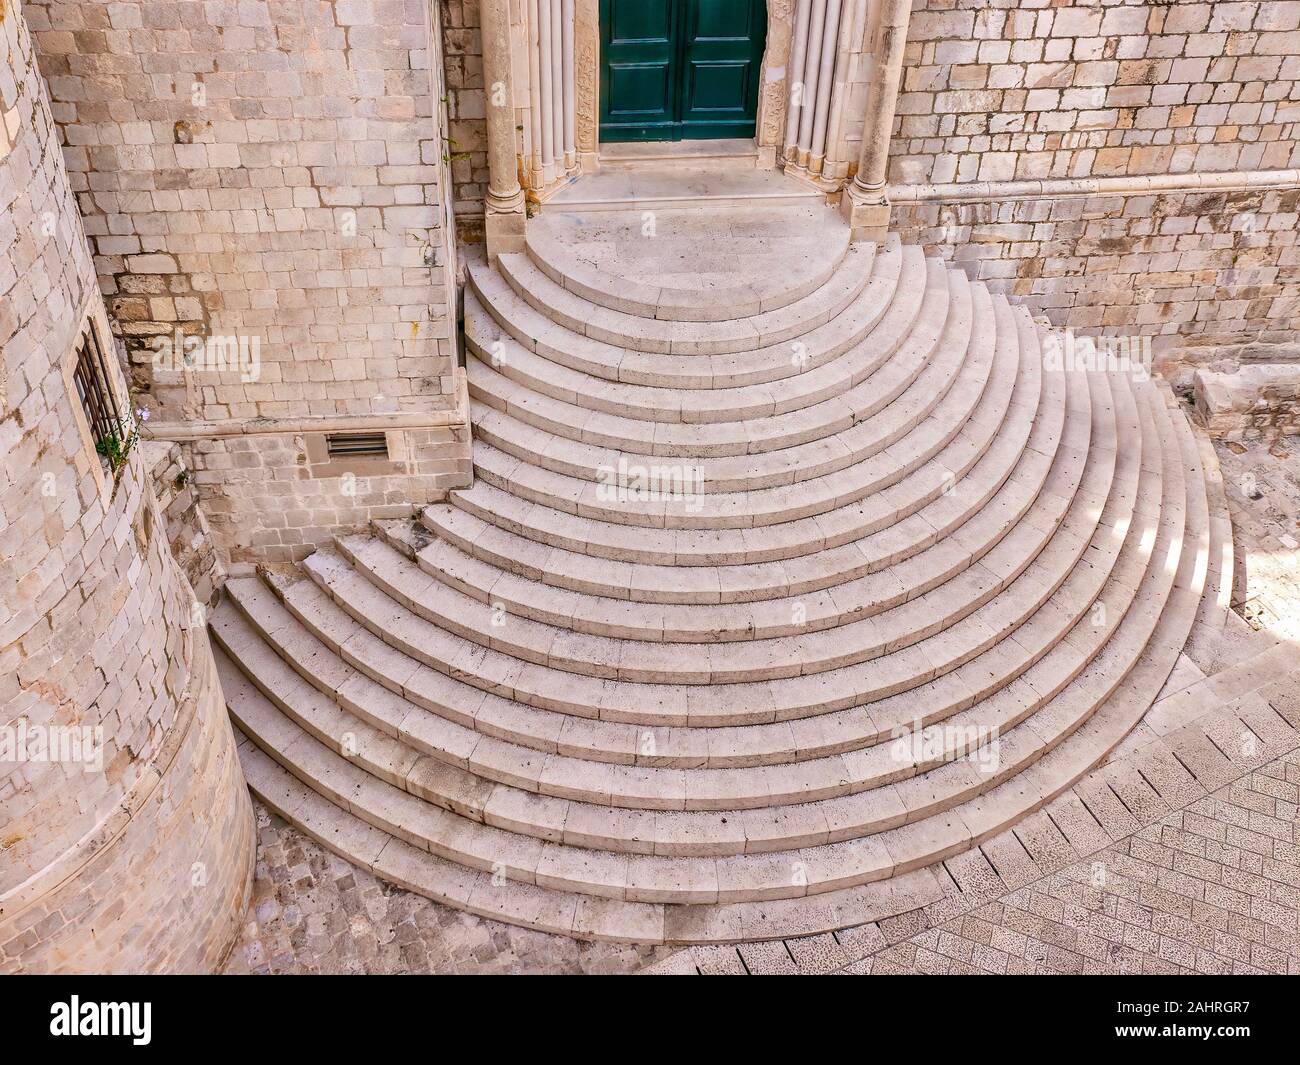 Portrait de la cité médiévale d'escalier en pierre semi-circulaire à l'extérieur de l'entrée pour le Monastère dominicain dans la vieille ville de Dubrovnik, Croatie. Banque D'Images